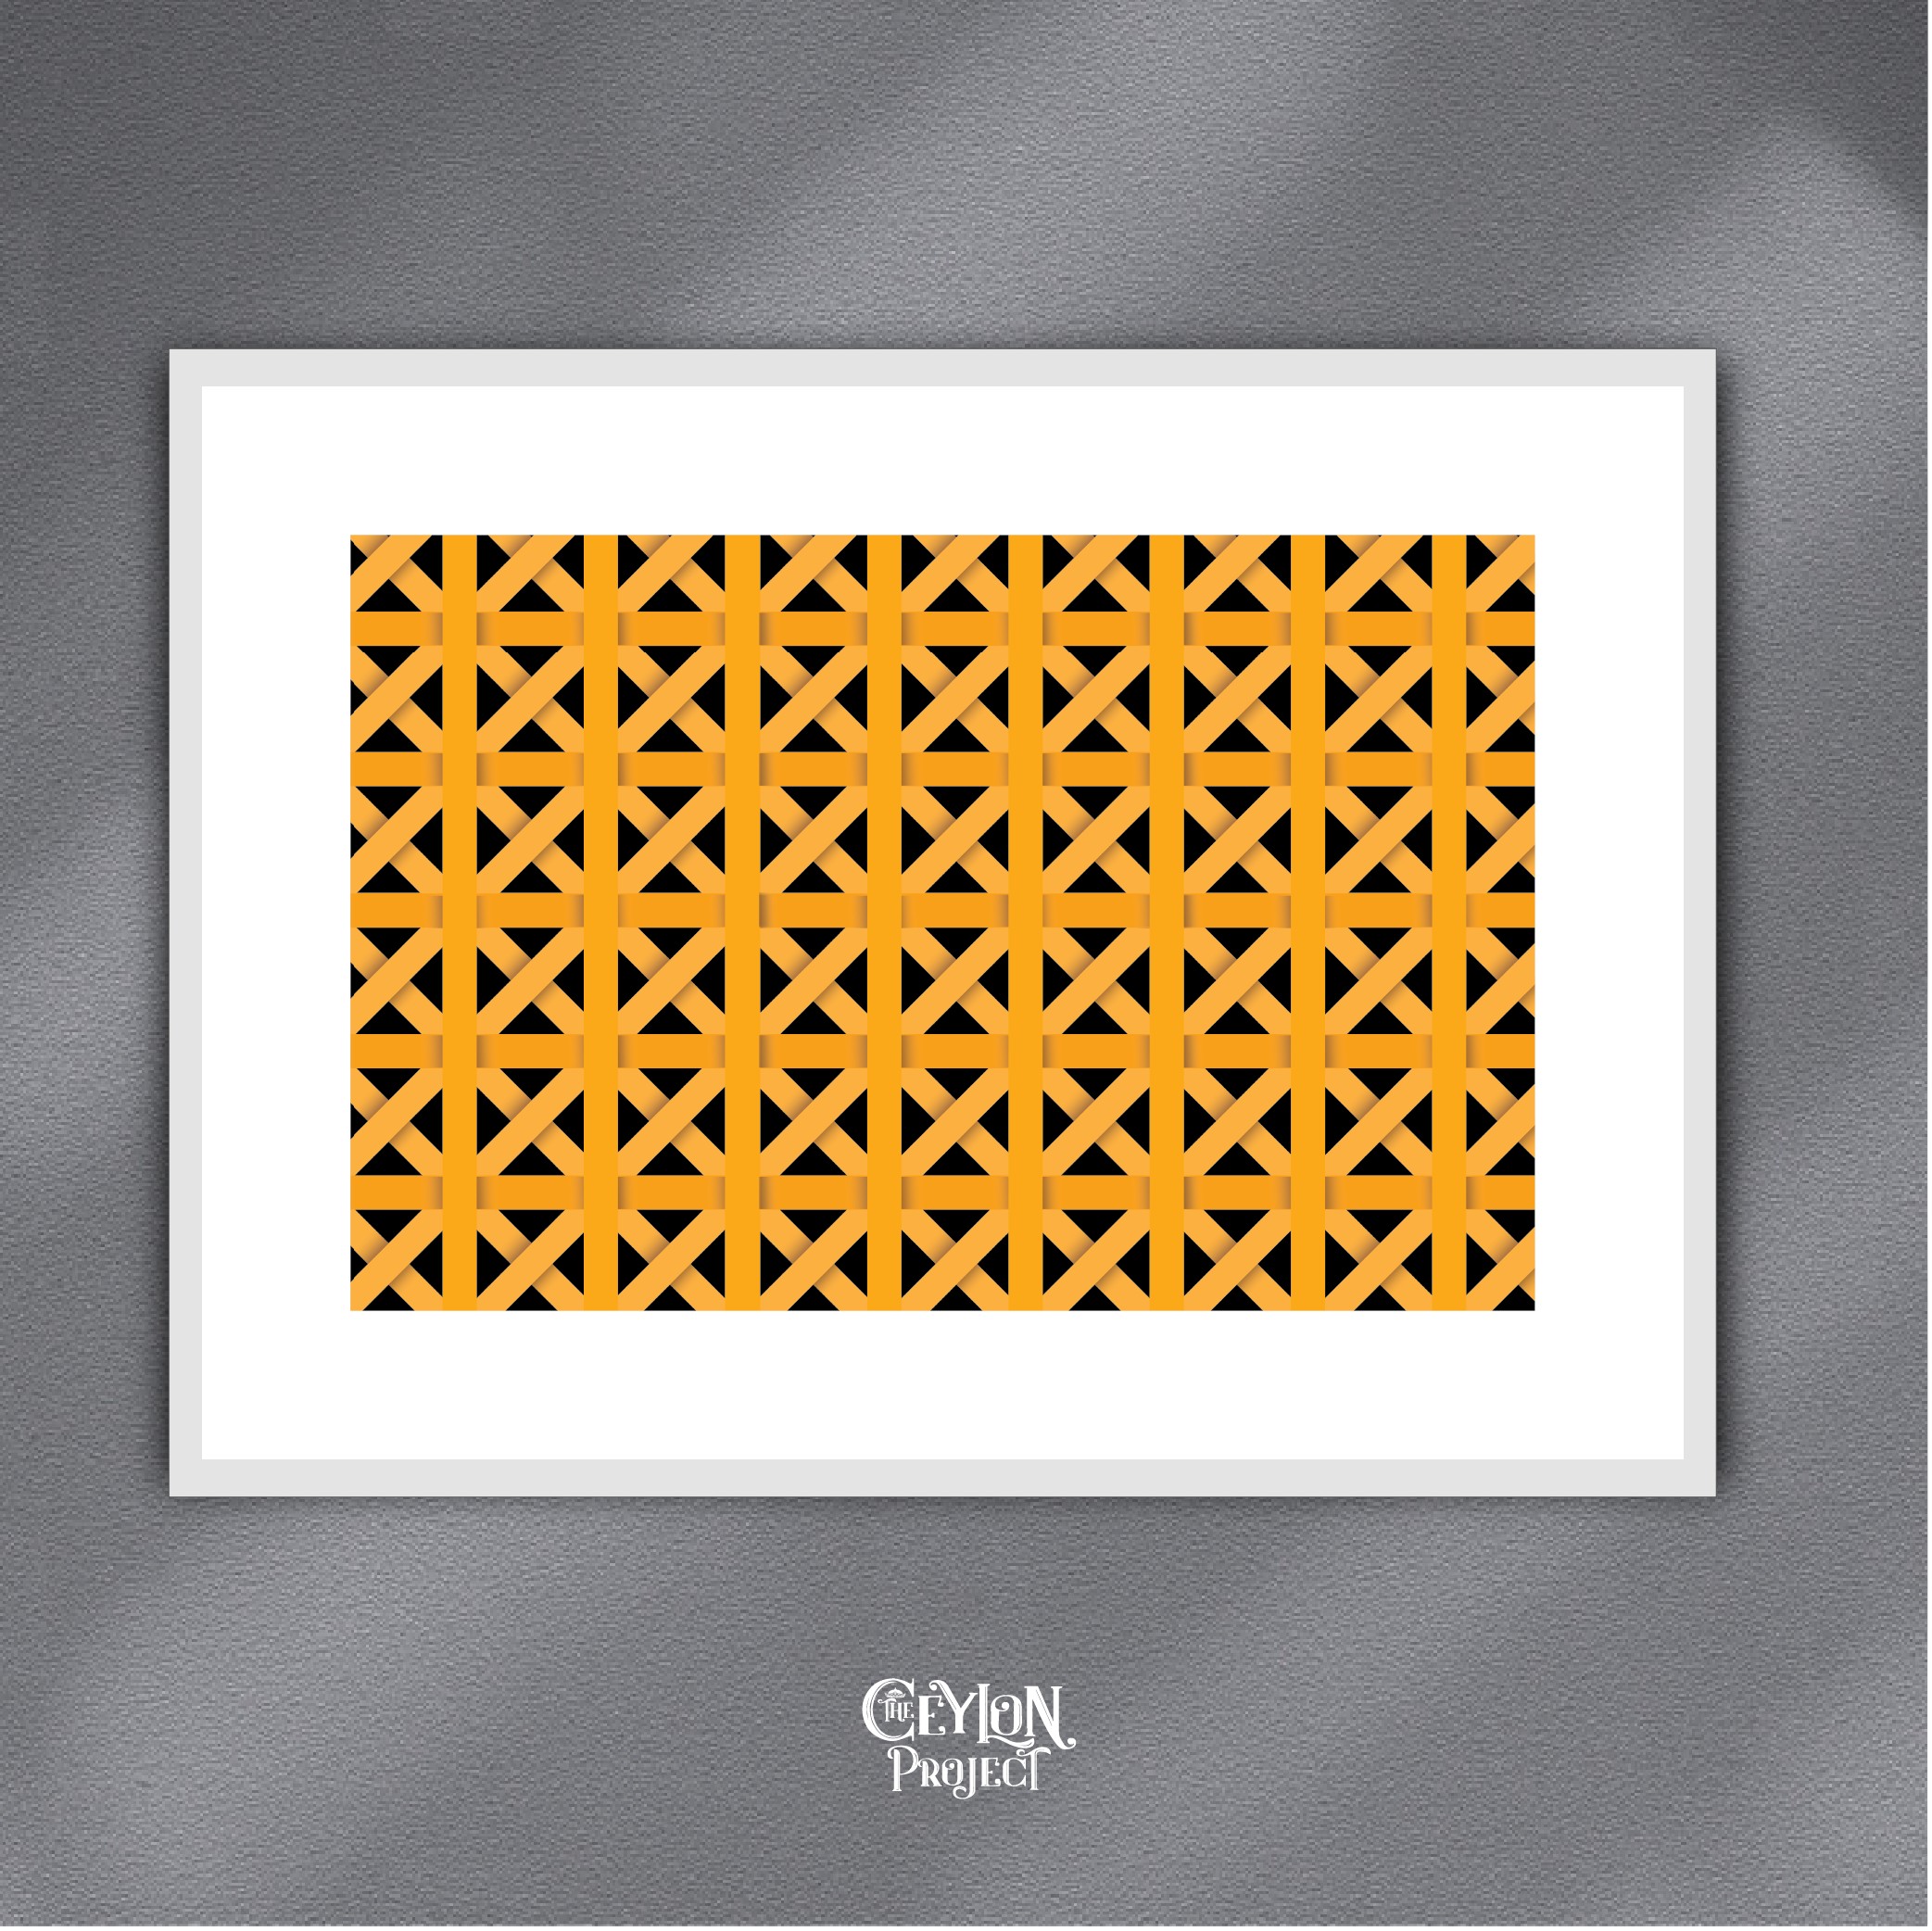 Gok Kola design pattern by Ceylon Project